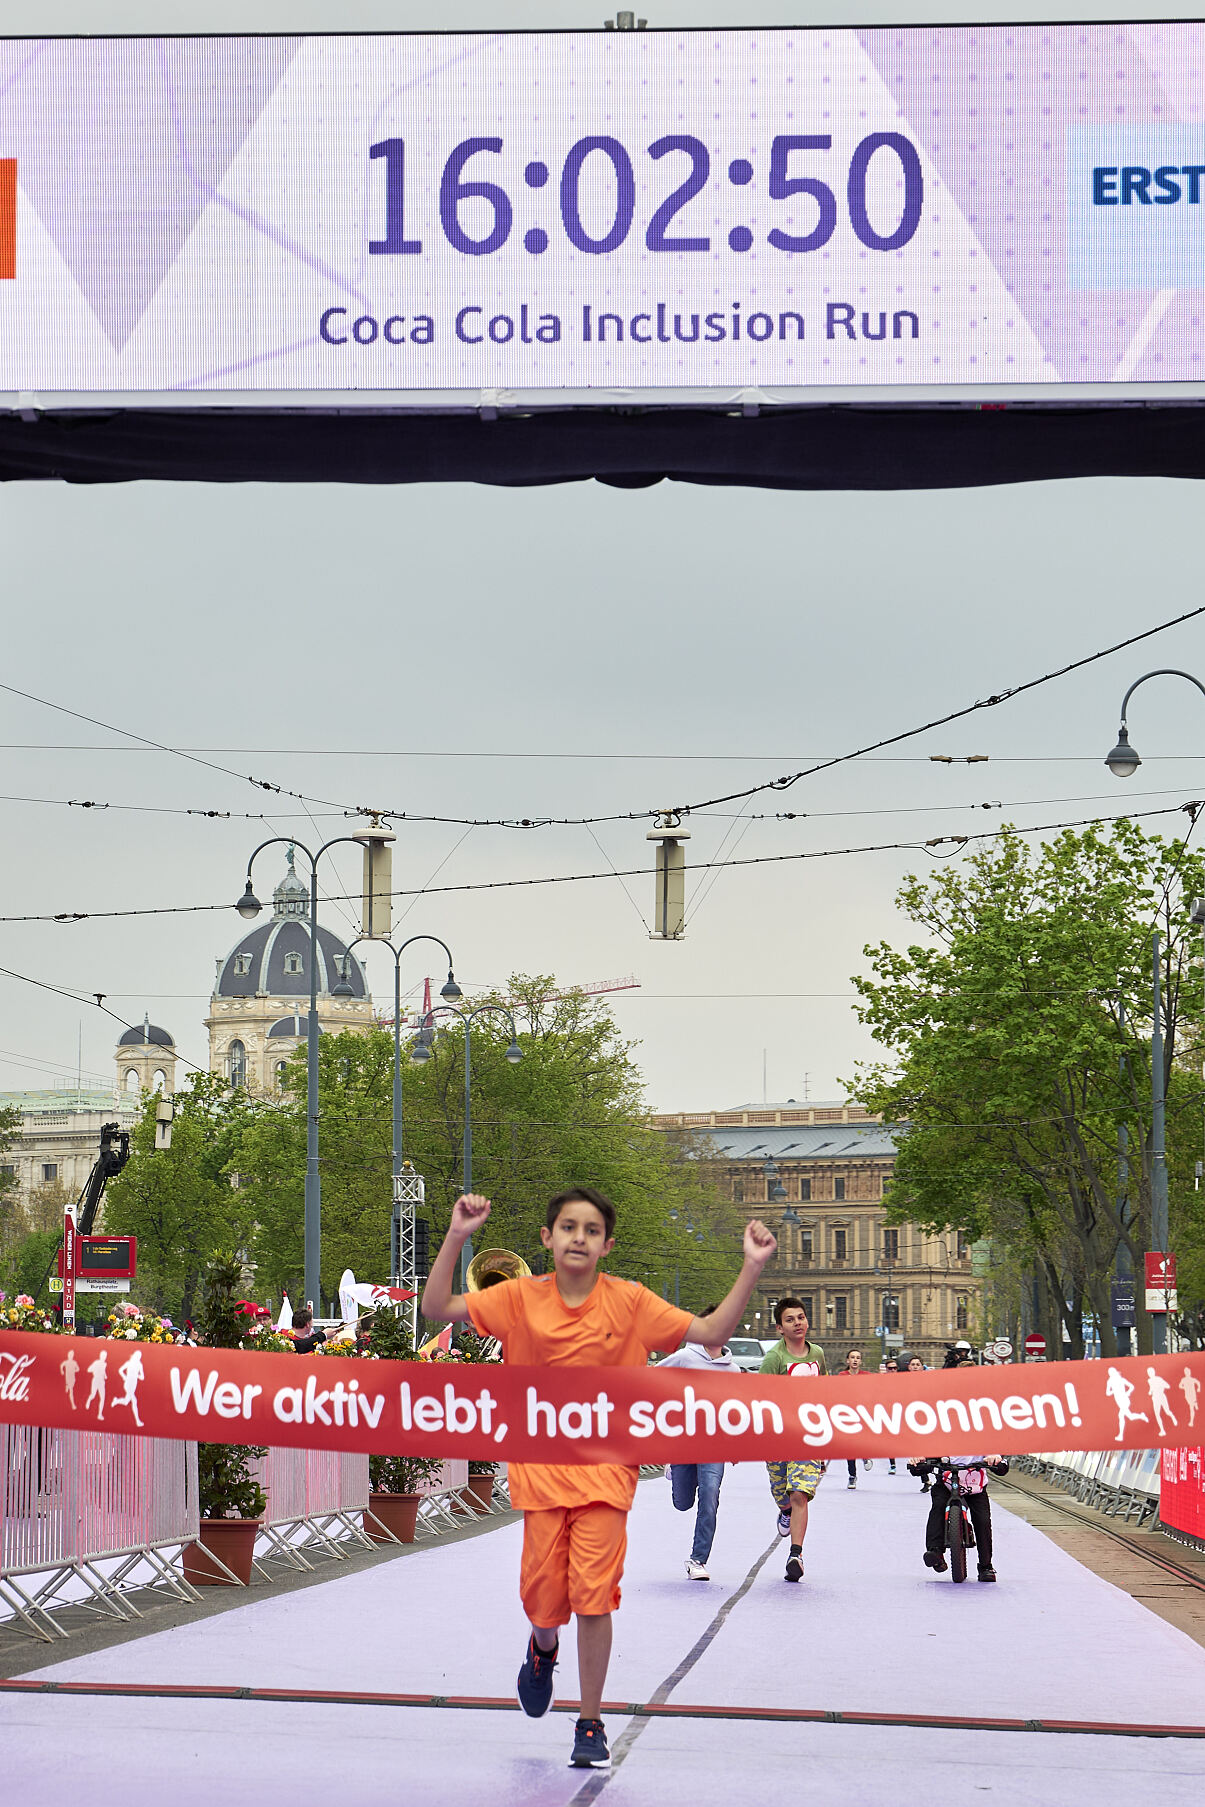 Zieleinlauf Coca-Cola Inclusion Run